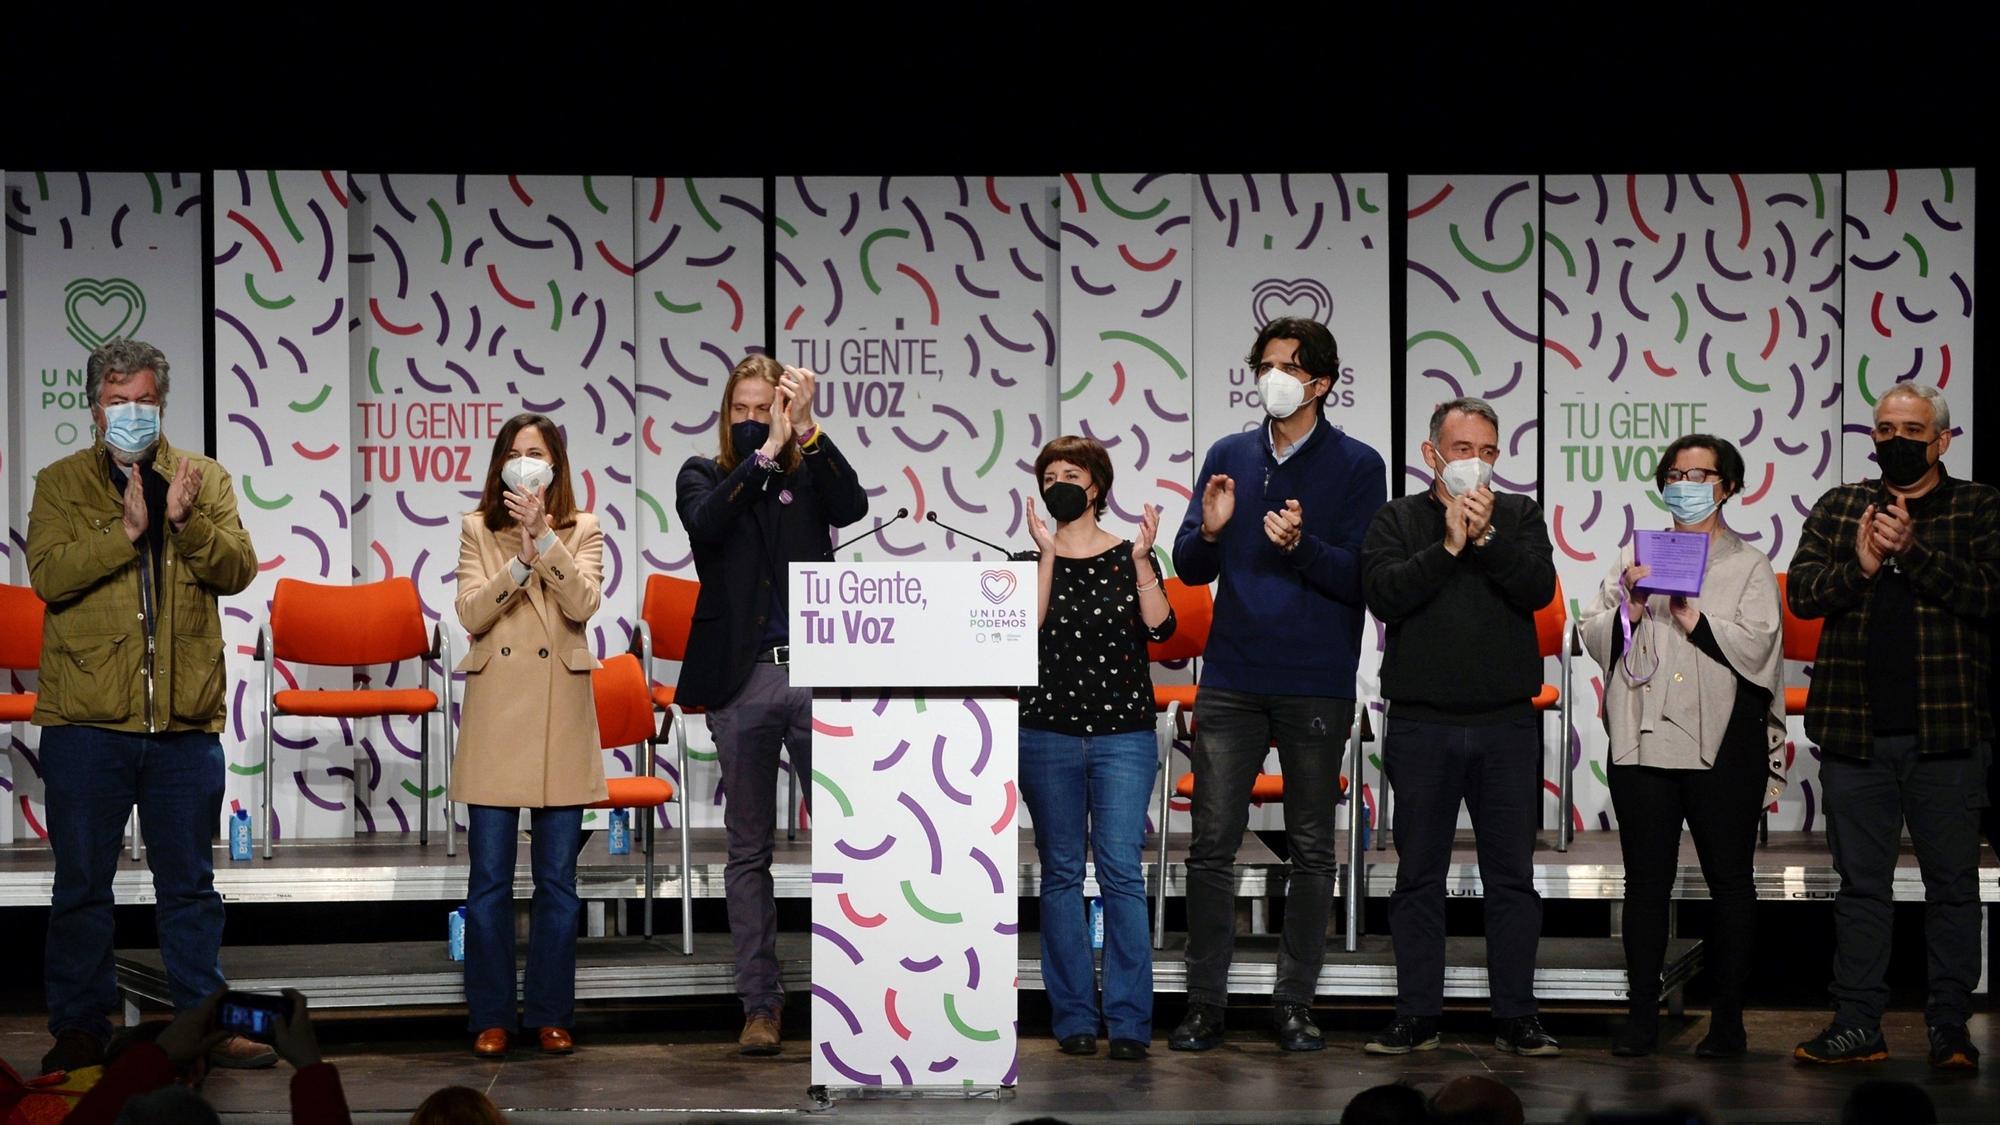 La secretaria general de Podemos, Ione Belarra, junto al candidato del partido para las elecciones de Castilla y León, Pablo Fernández, y otros representantes de la formación morada en un acto en Valladolid